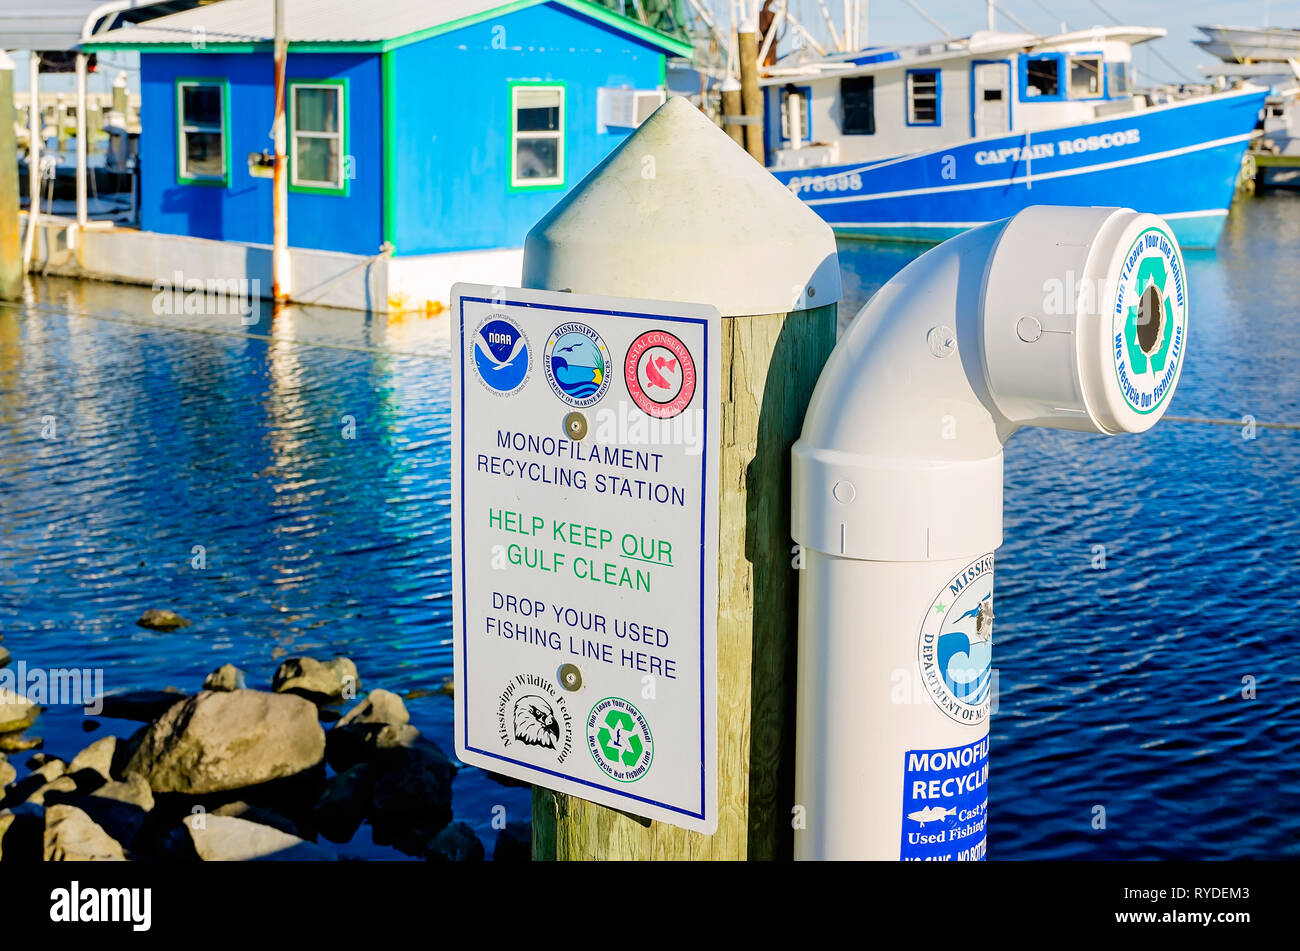 Un monofilament de recyclage est installé sur un quai pour l'élimination des engins de pêche dans la région de Pass Christian (Mississippi). Banque D'Images